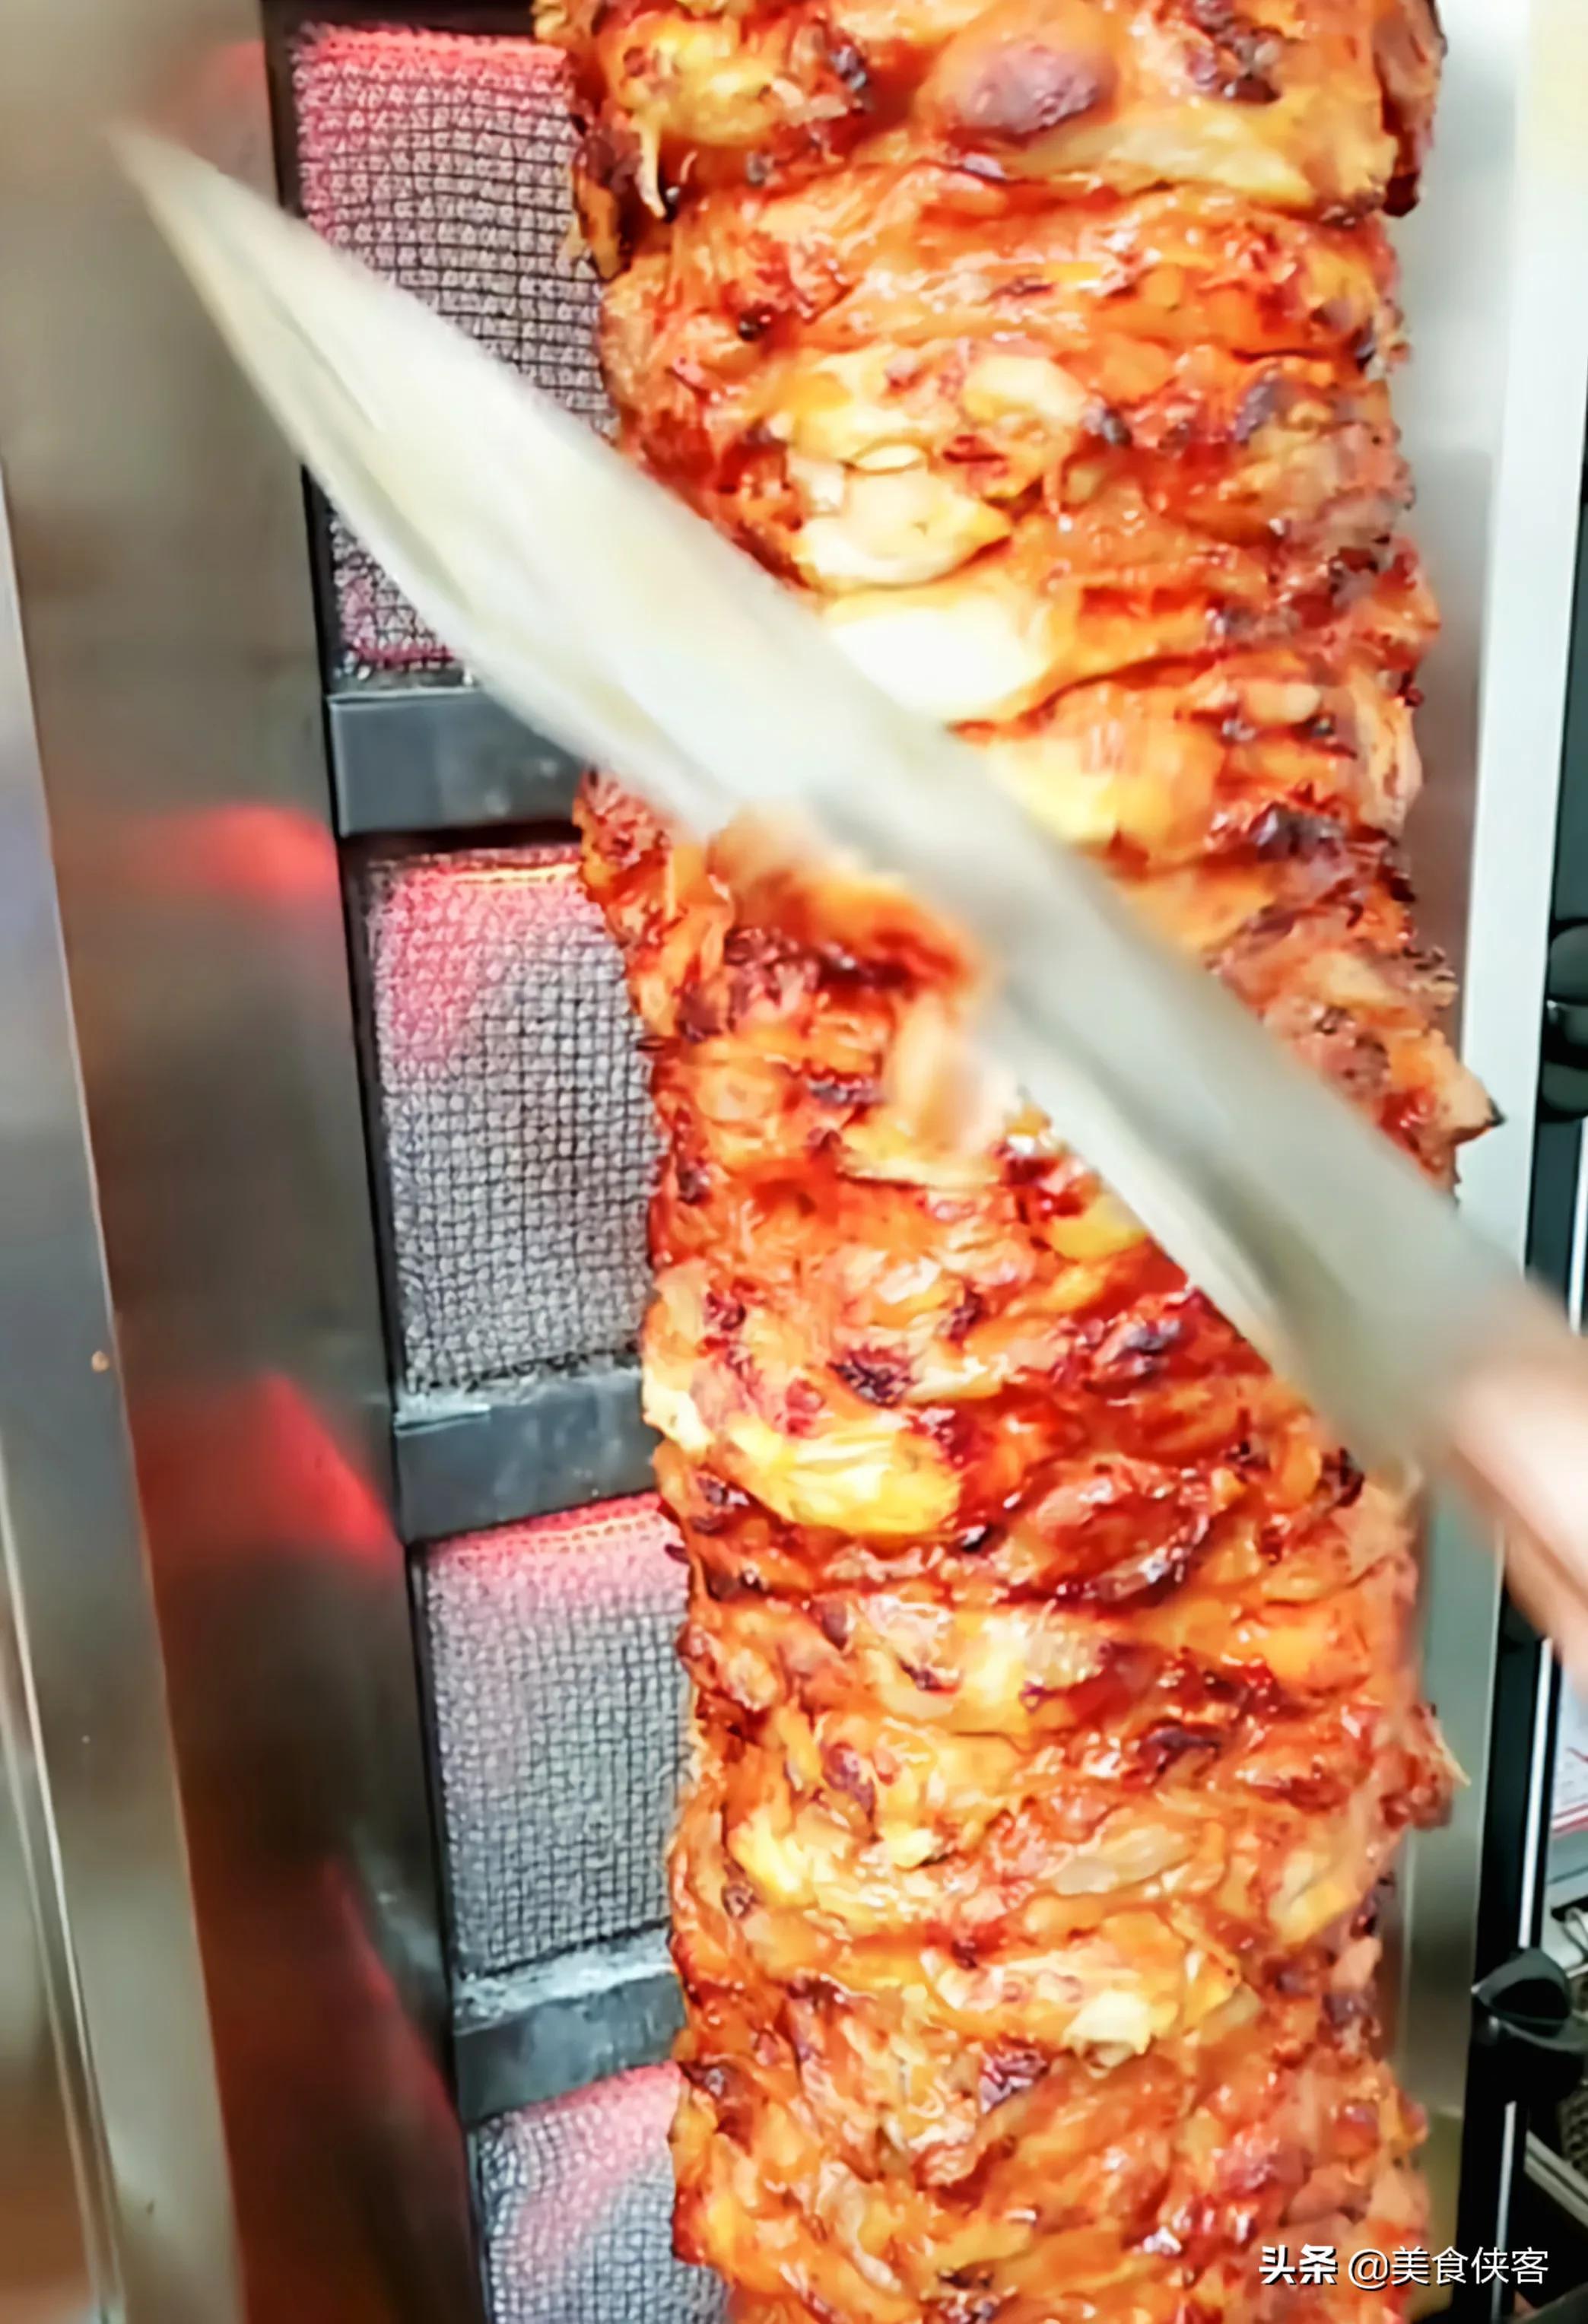 土耳其烤肉拌饭的加工做法及配方